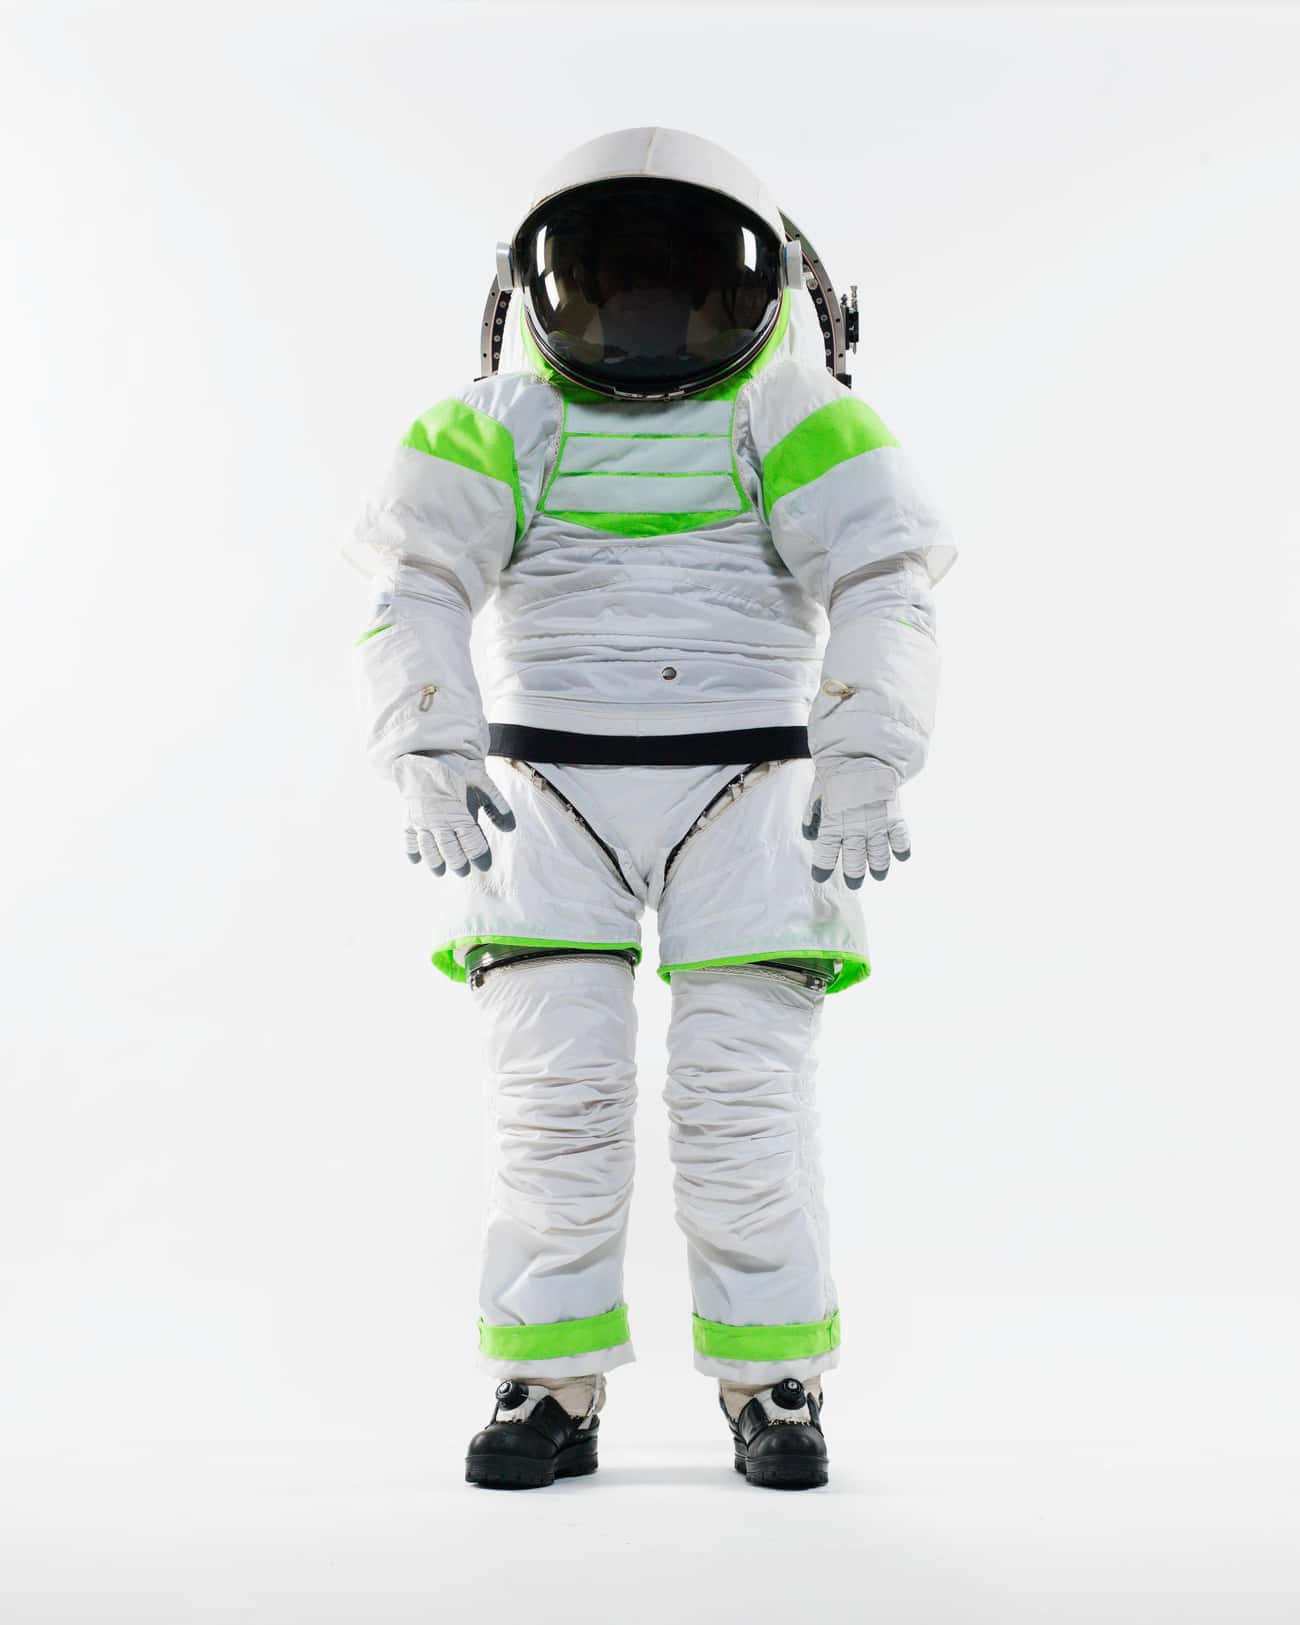 2012: Z-1 EVA Space Suit, United States